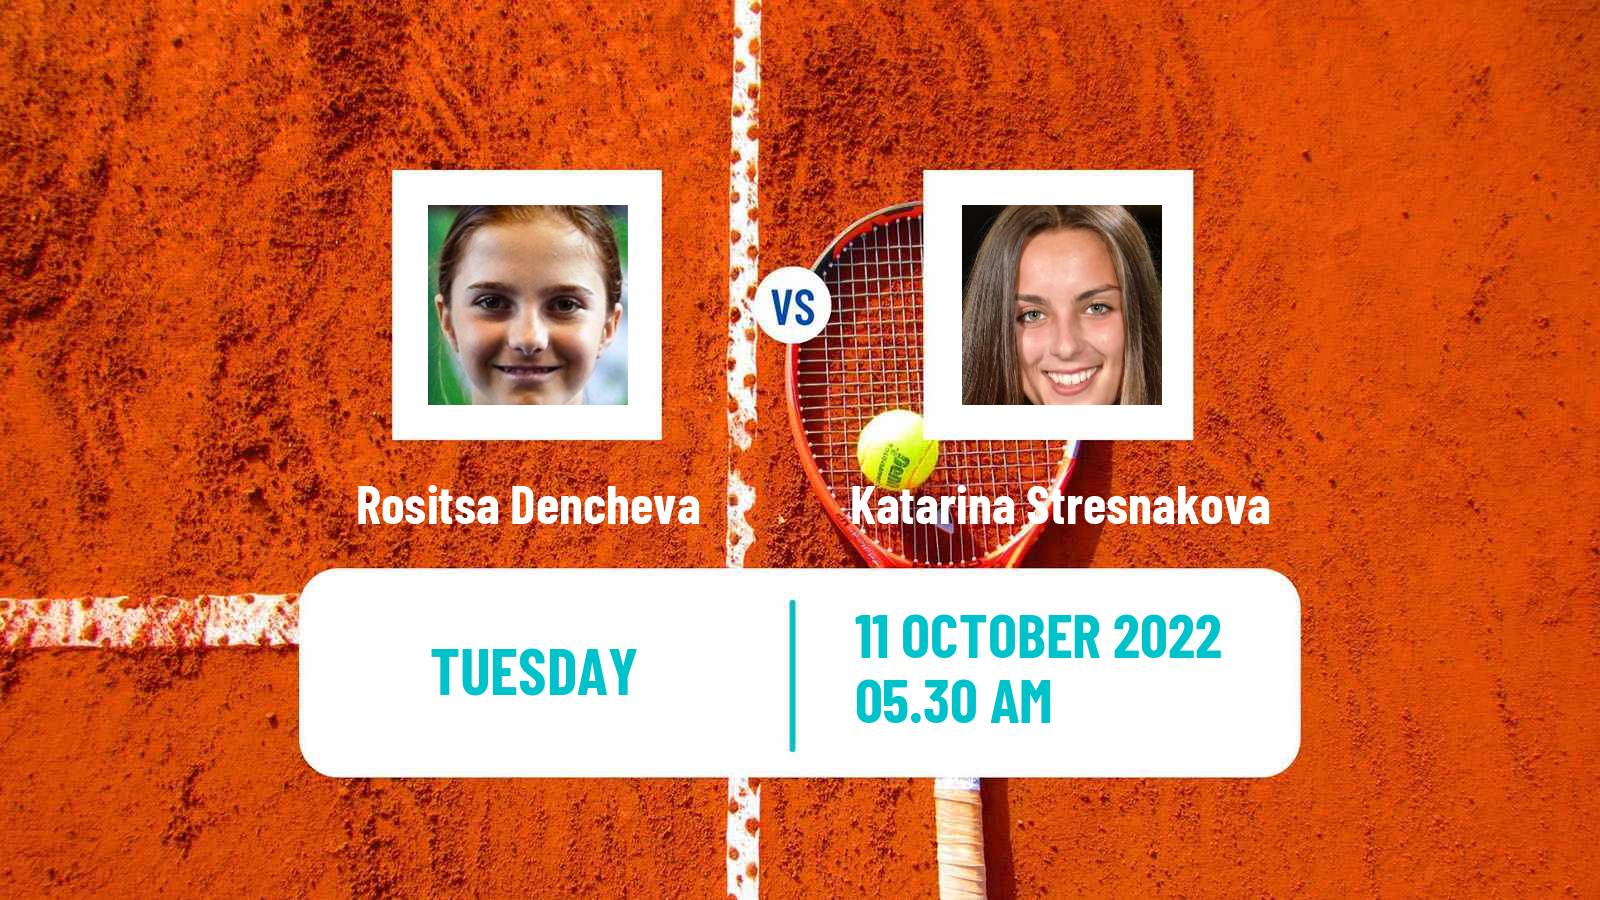 Tennis ITF Tournaments Rositsa Dencheva - Katarina Stresnakova